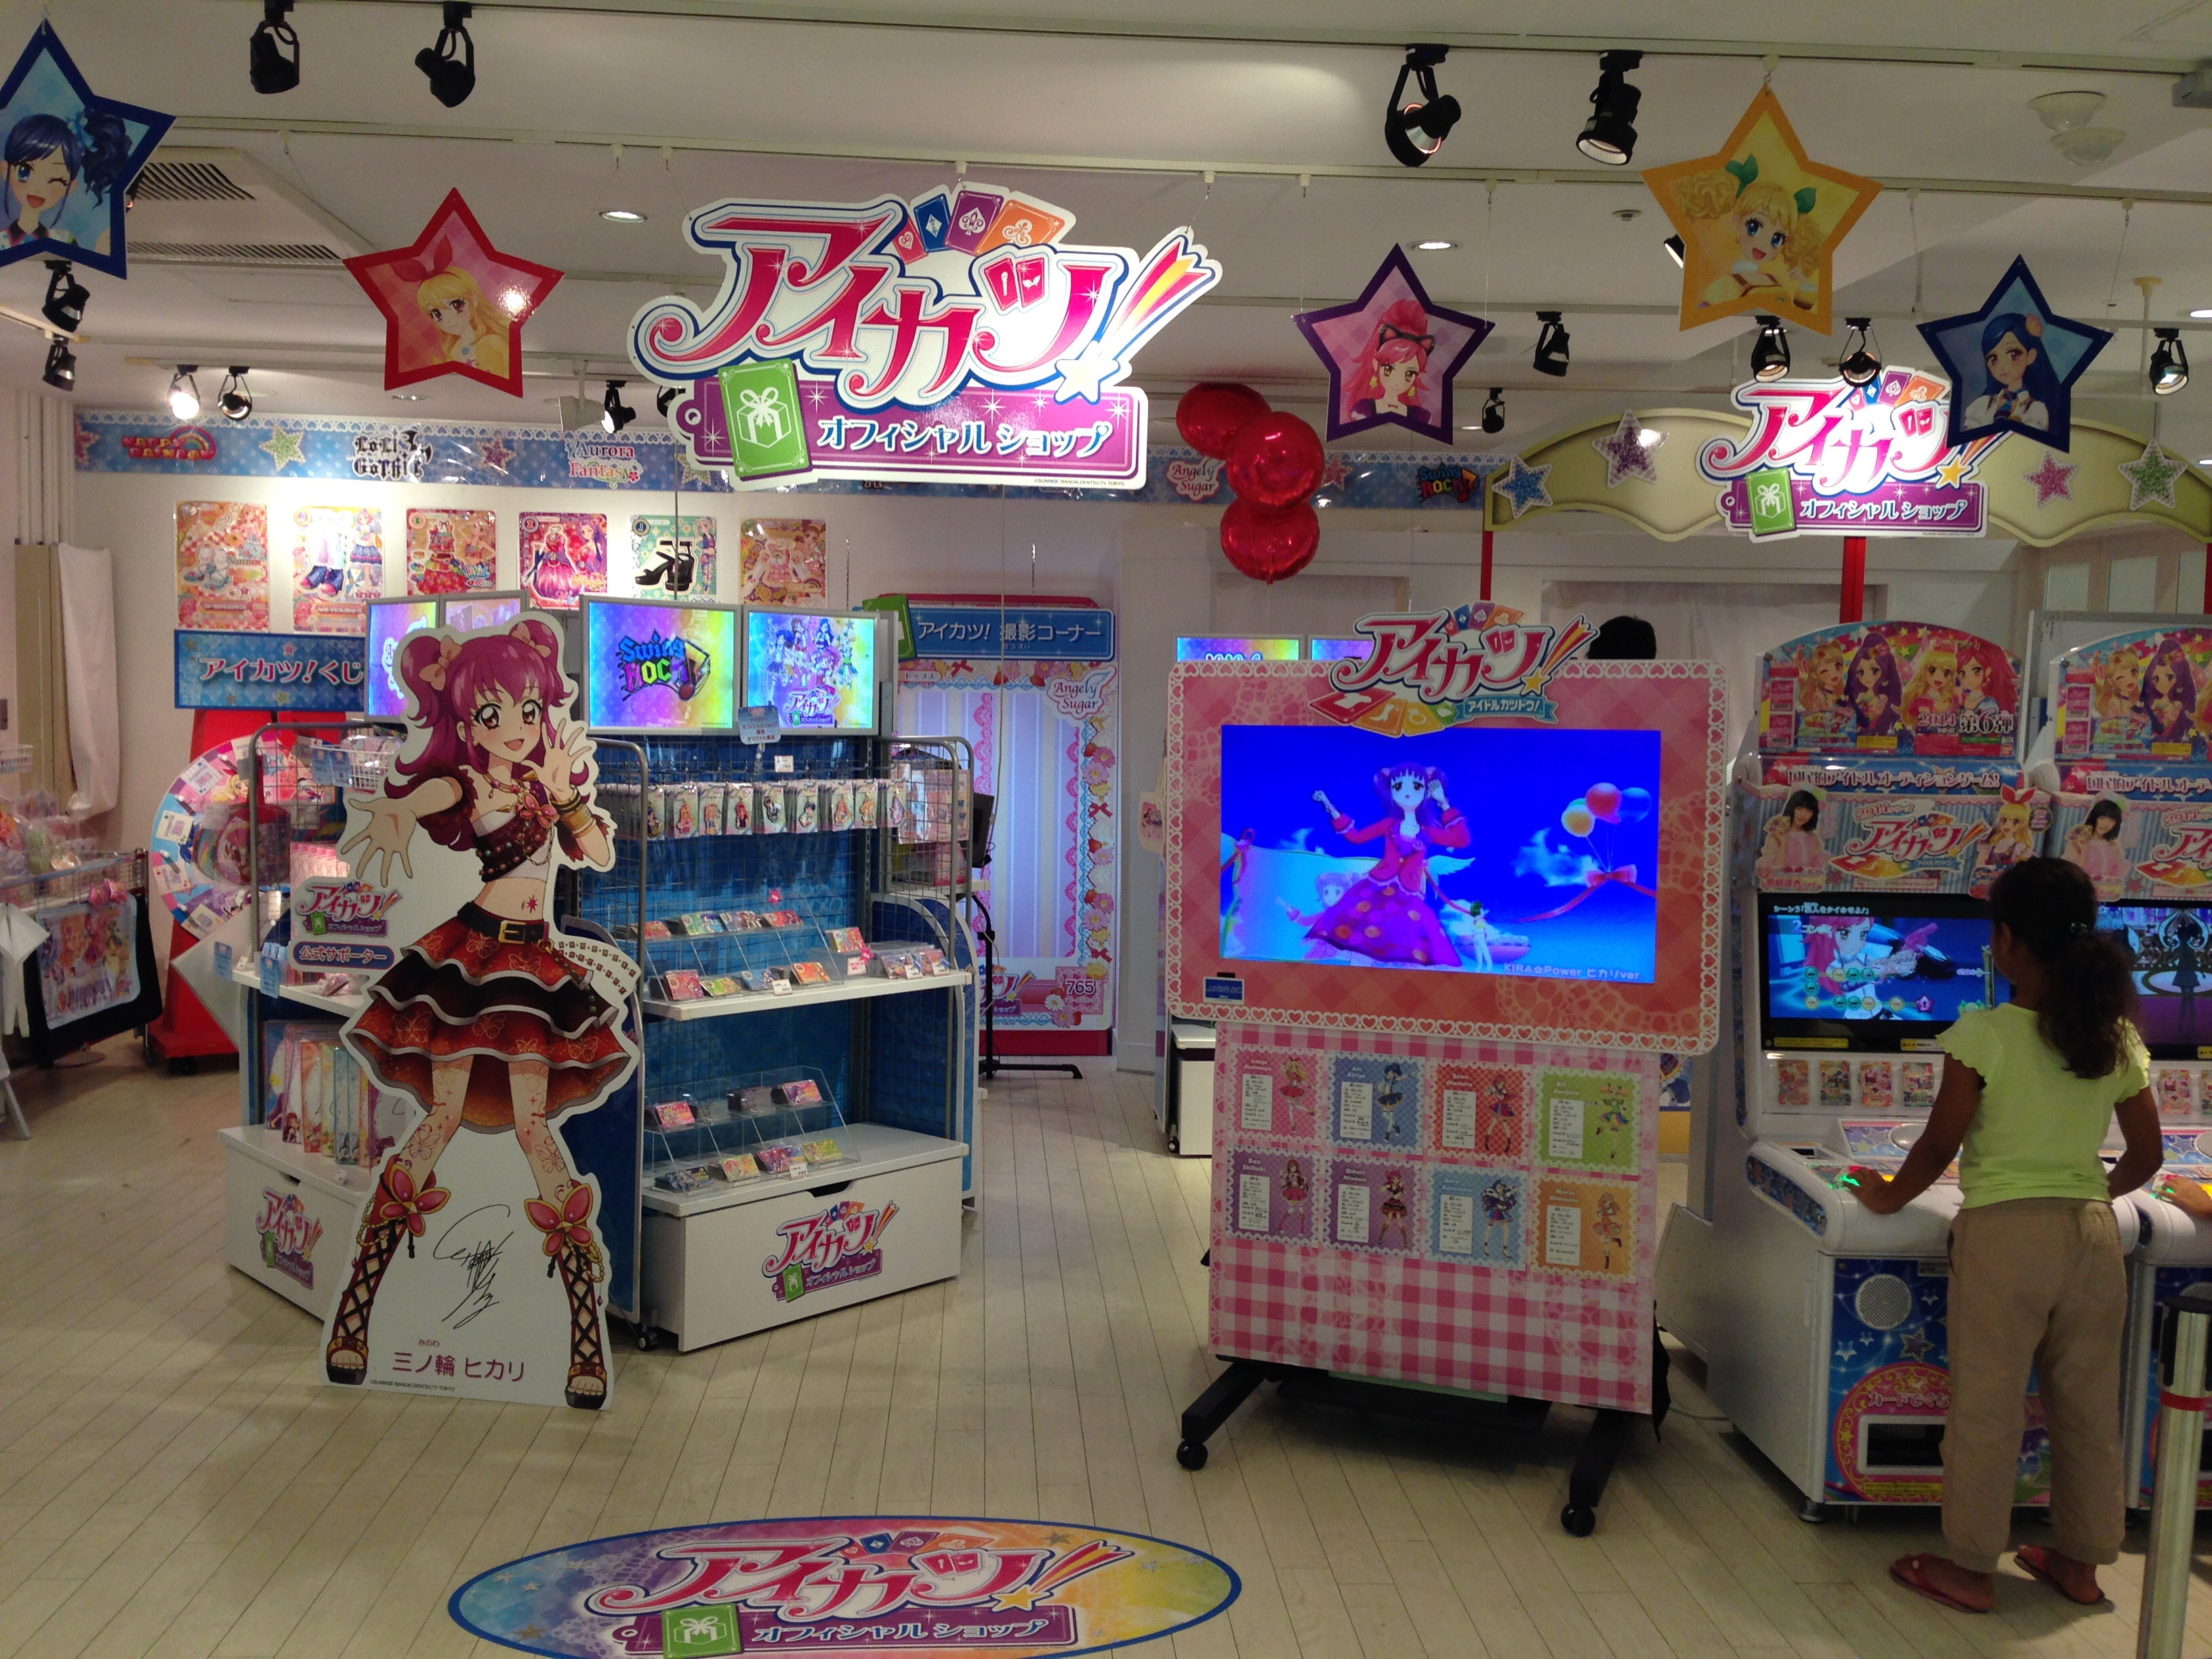 吉祥寺のアイカツオフィシャルショップに行ってきました 東京 多摩中心 イクメンの家族でおでかけブログ